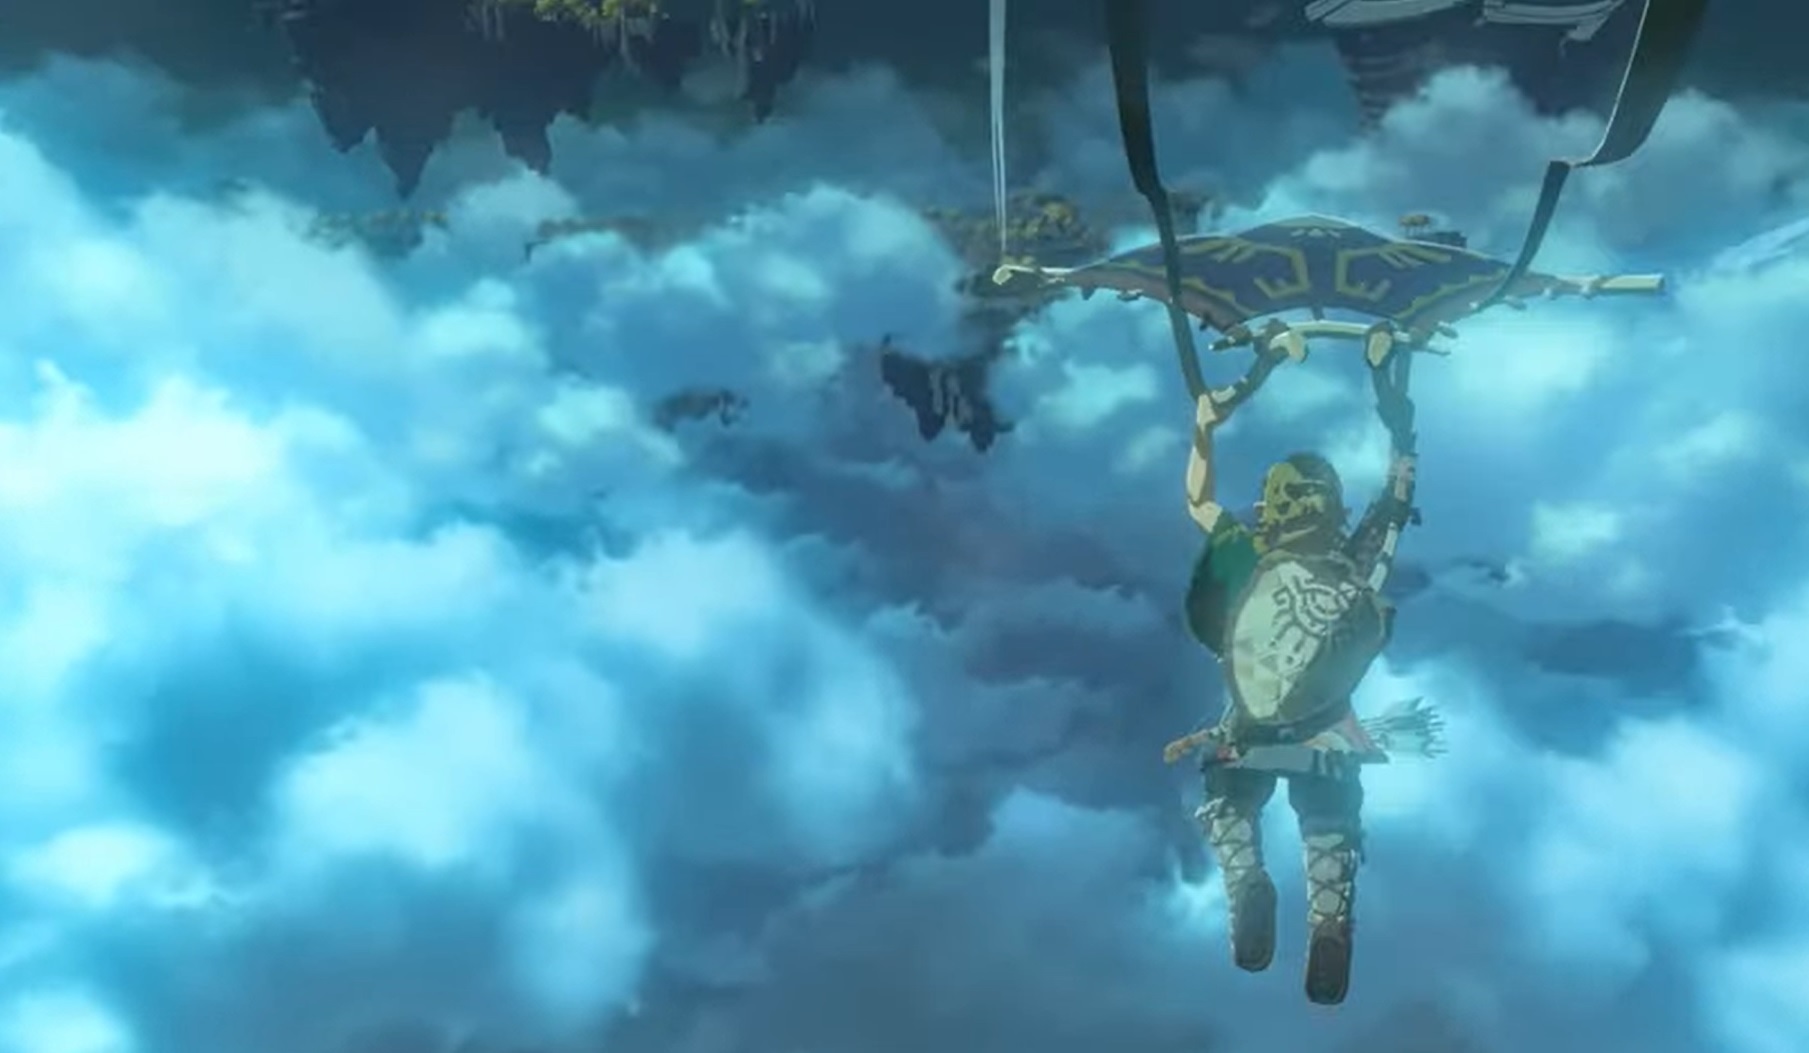 15-06-2021 La secuela de The Legend of Zelda: Breath of the Wild llegará en 2022.

Nintendo ha esperado a la última jornada del E3 2021 para celebrar un nuevo Nintendo Direct, en el que ha presentado una consola Game & Watch para celebrar el 35 aniversario del primer The Legend of Zelda y ha anunciado que la secuela de The Legend of Zelda: Breath of the Wild llegará en 2022.

POLITICA INVESTIGACIÓN Y TECNOLOGÍA
NINTENDO
